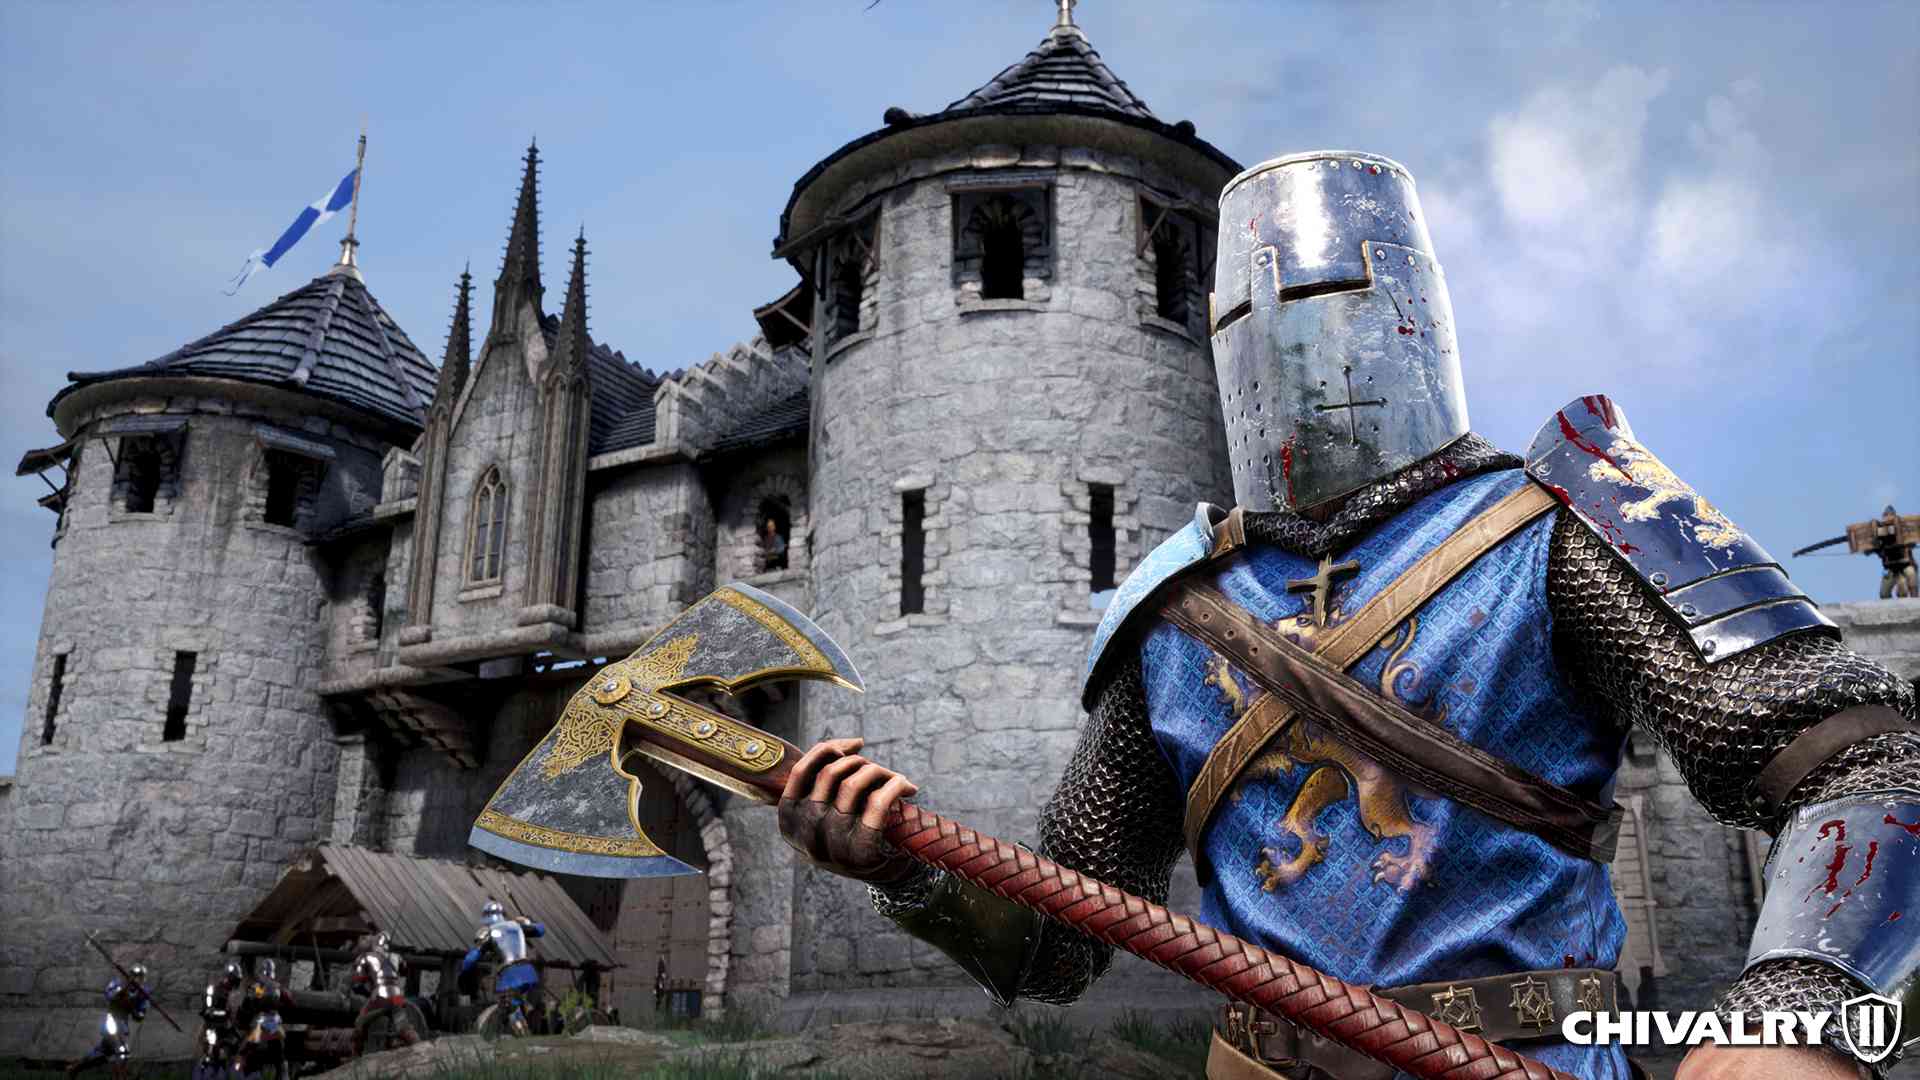 Voják v Chivalry 2 střežící hrad